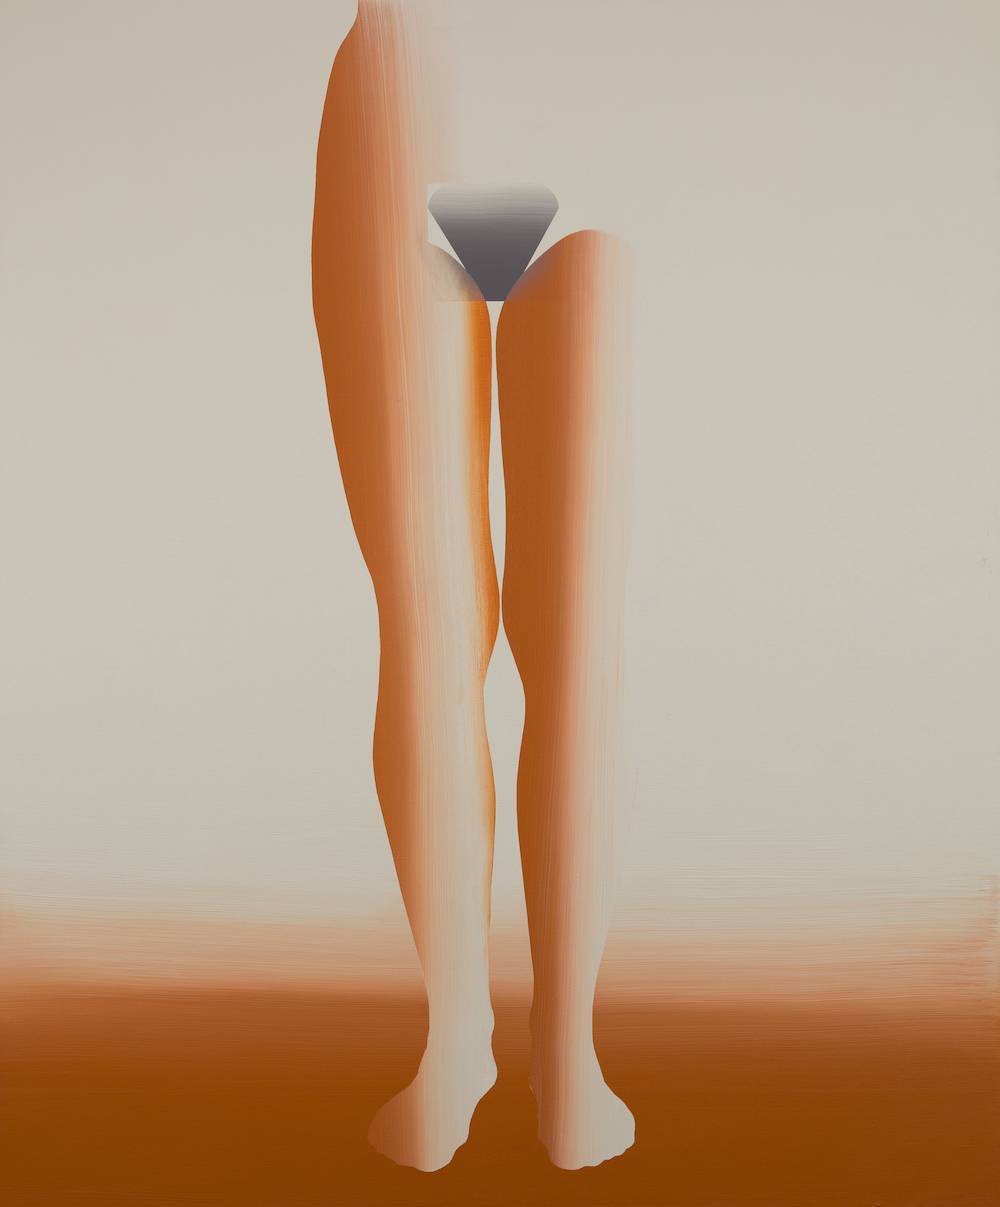 Agata Bogacka, 2018, Nogi, akryl na płótnie, 145 x 120 cm, (Fot. Ernest Wińczyk)